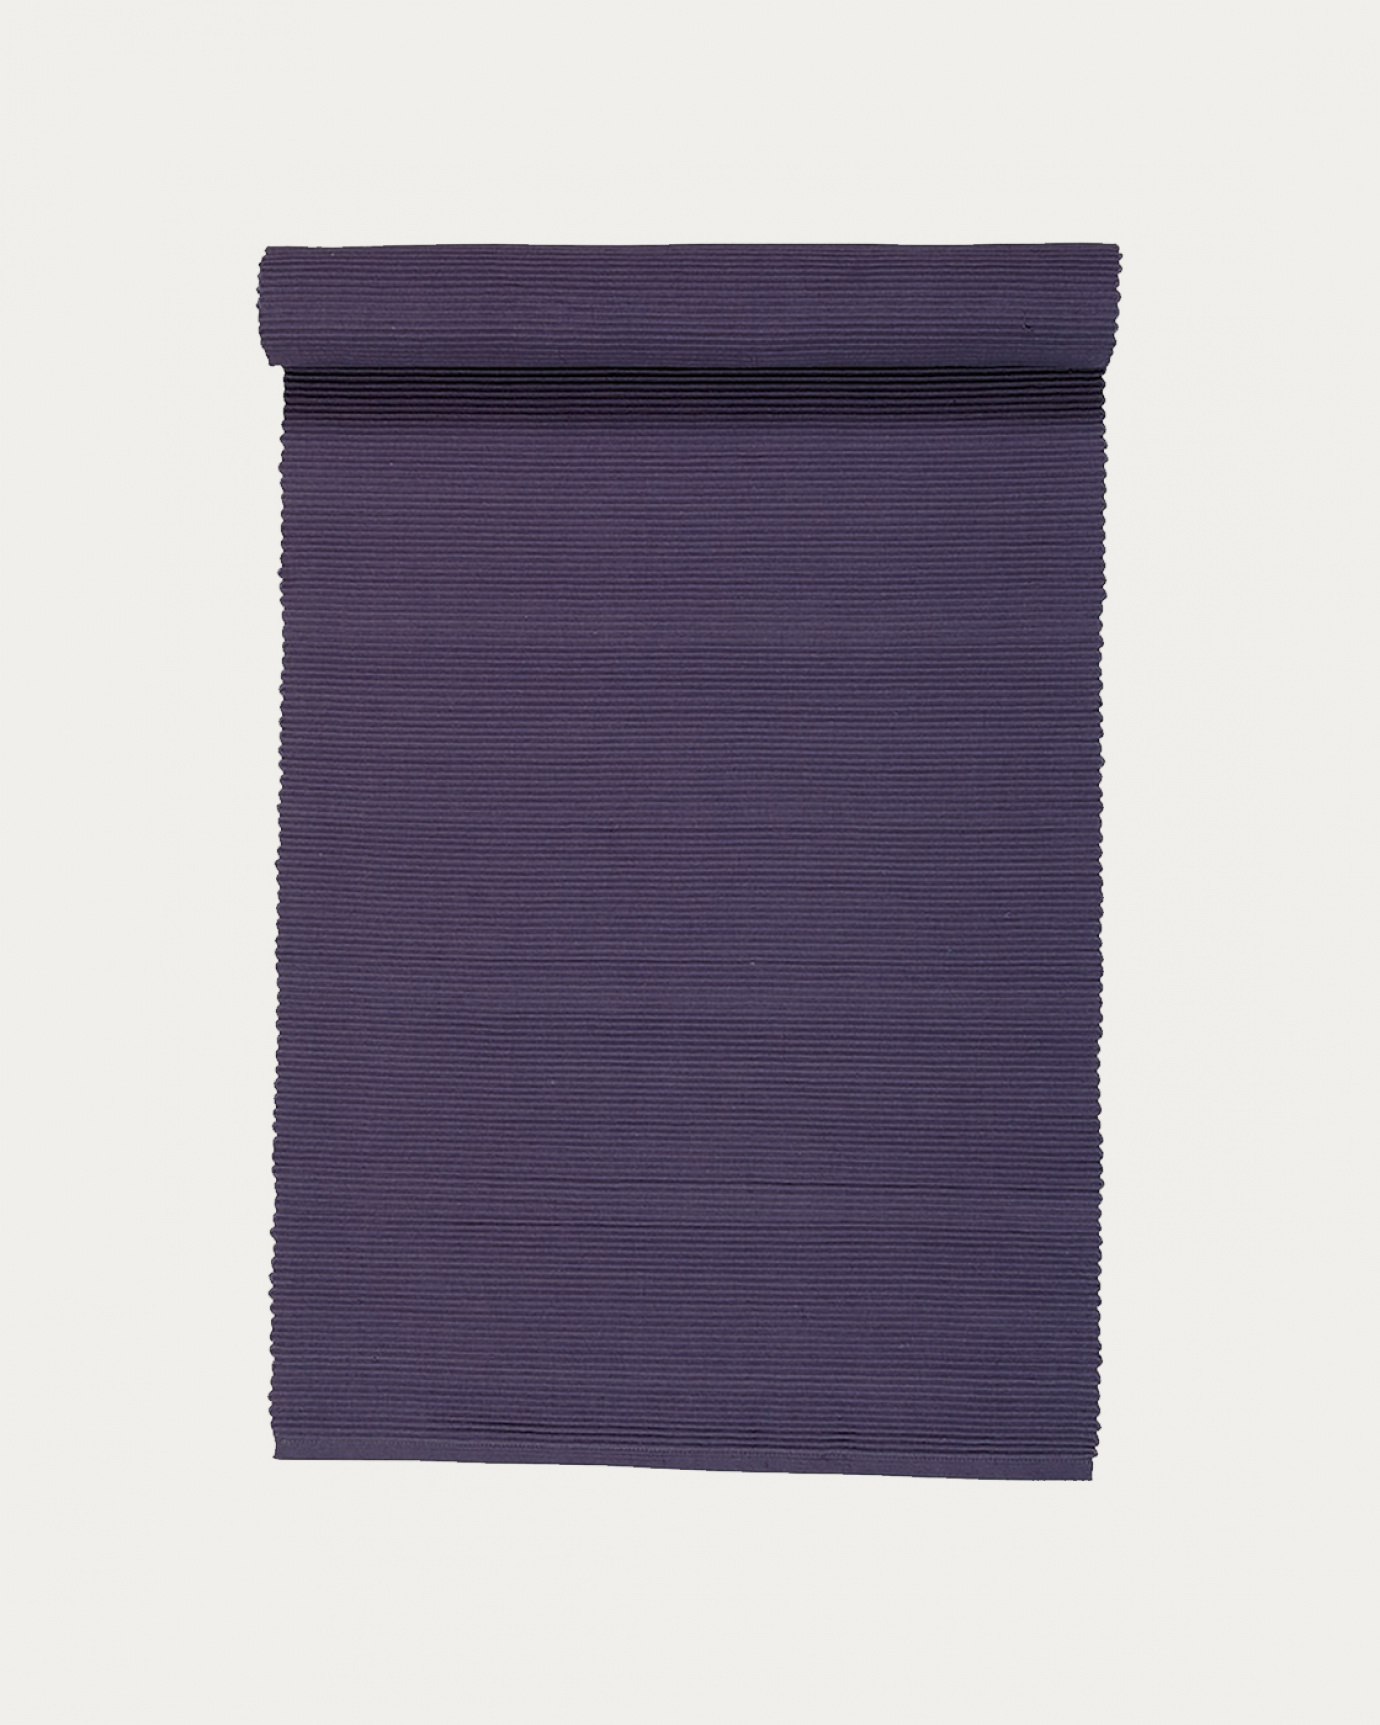 Immagine prodotto alba viola runner UNI in morbido cotone a costine di qualità di LINUM DESIGN. Dimensioni 45x150 cm.